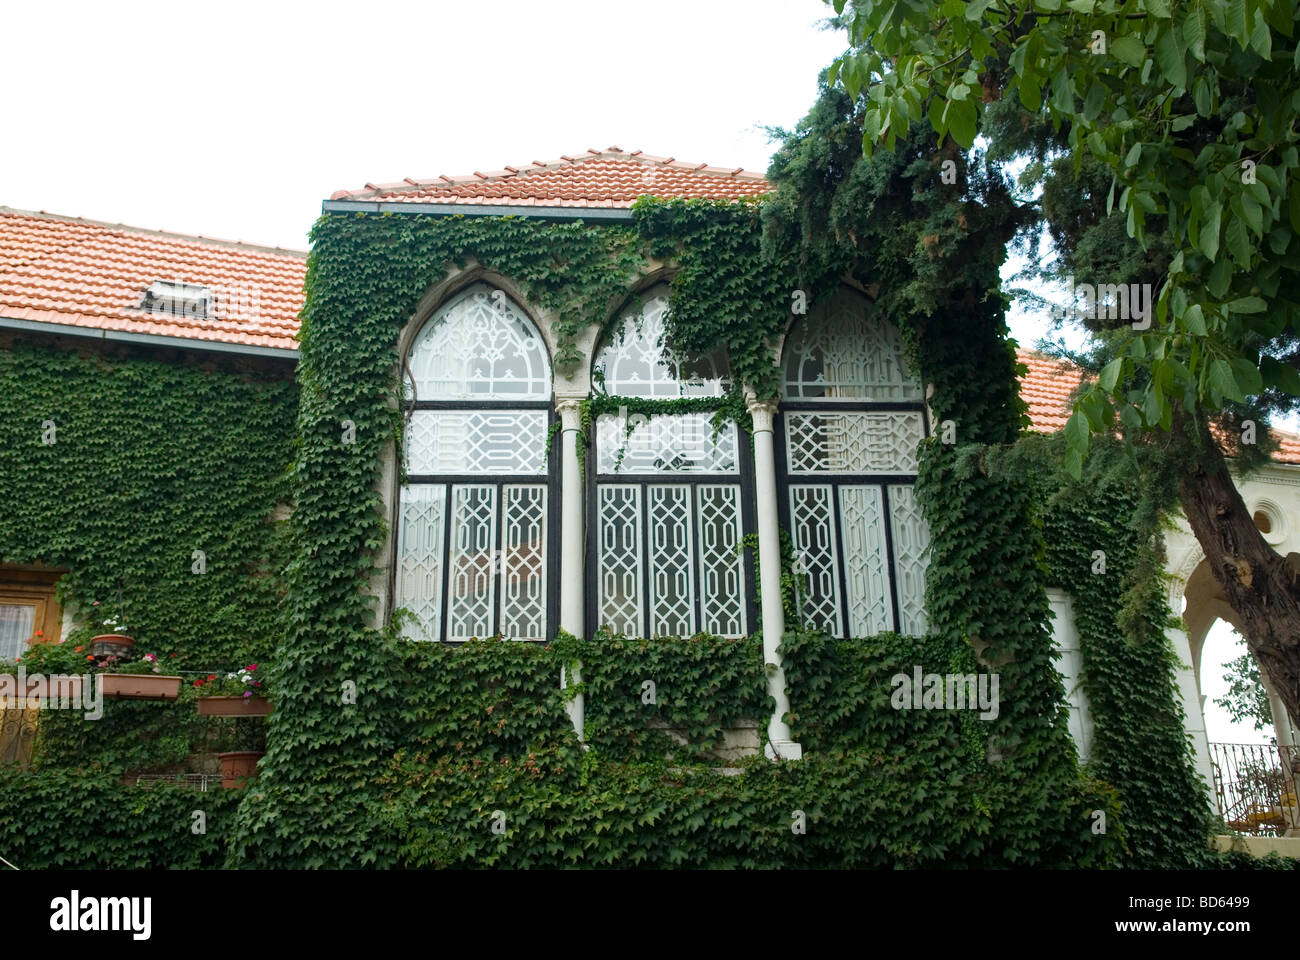 Chambre avec fenêtres couvertes de lierre vert Liban Moyen-Orient Asie Banque D'Images